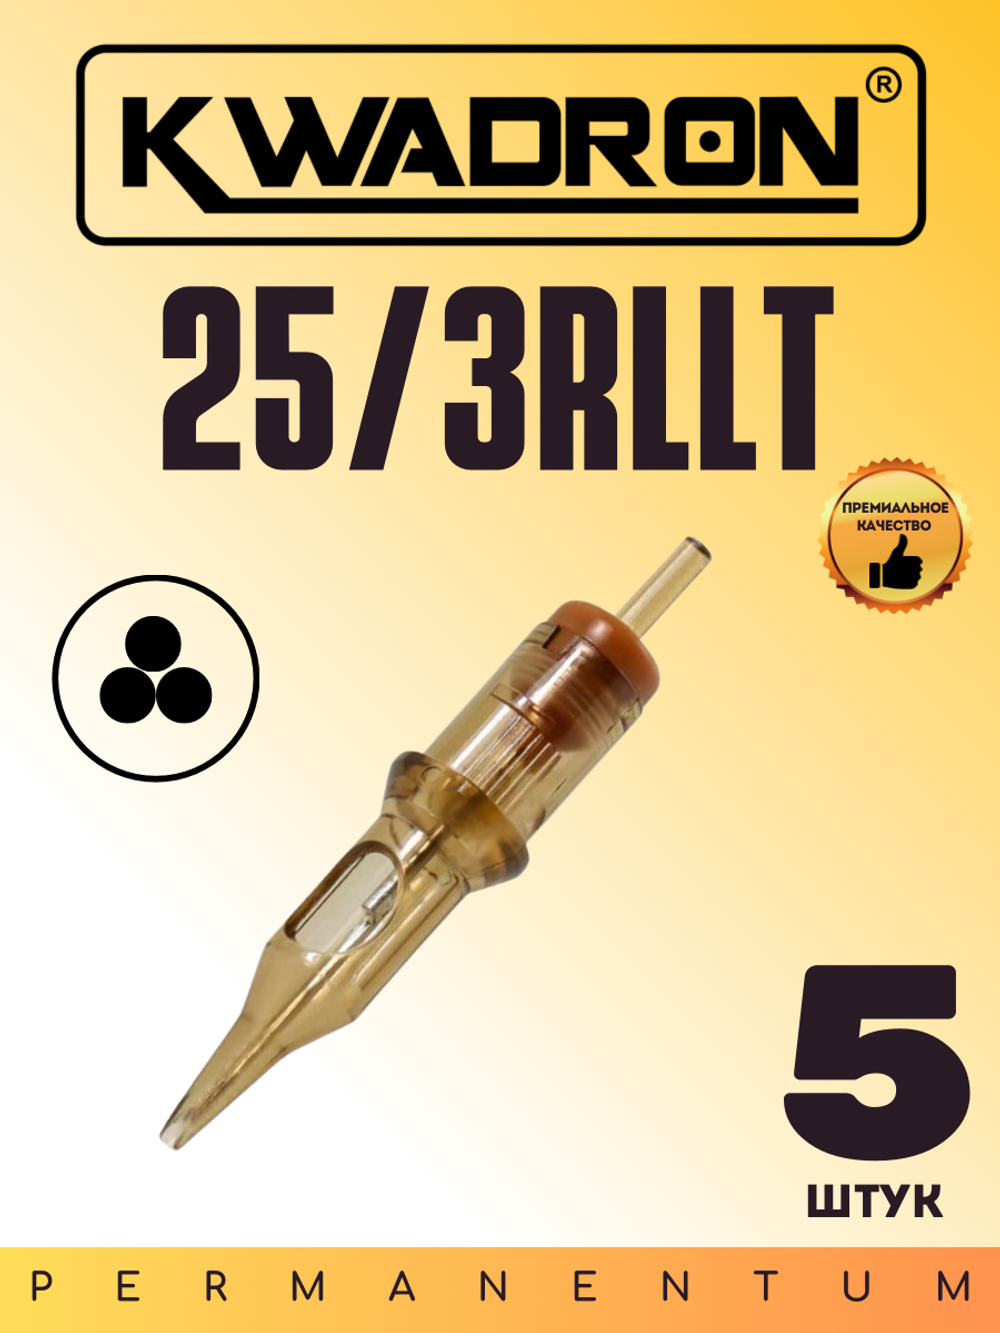 Картридж для татуажа "KWADRON Round Liner 25/3RLLT" блистер 5 шт.